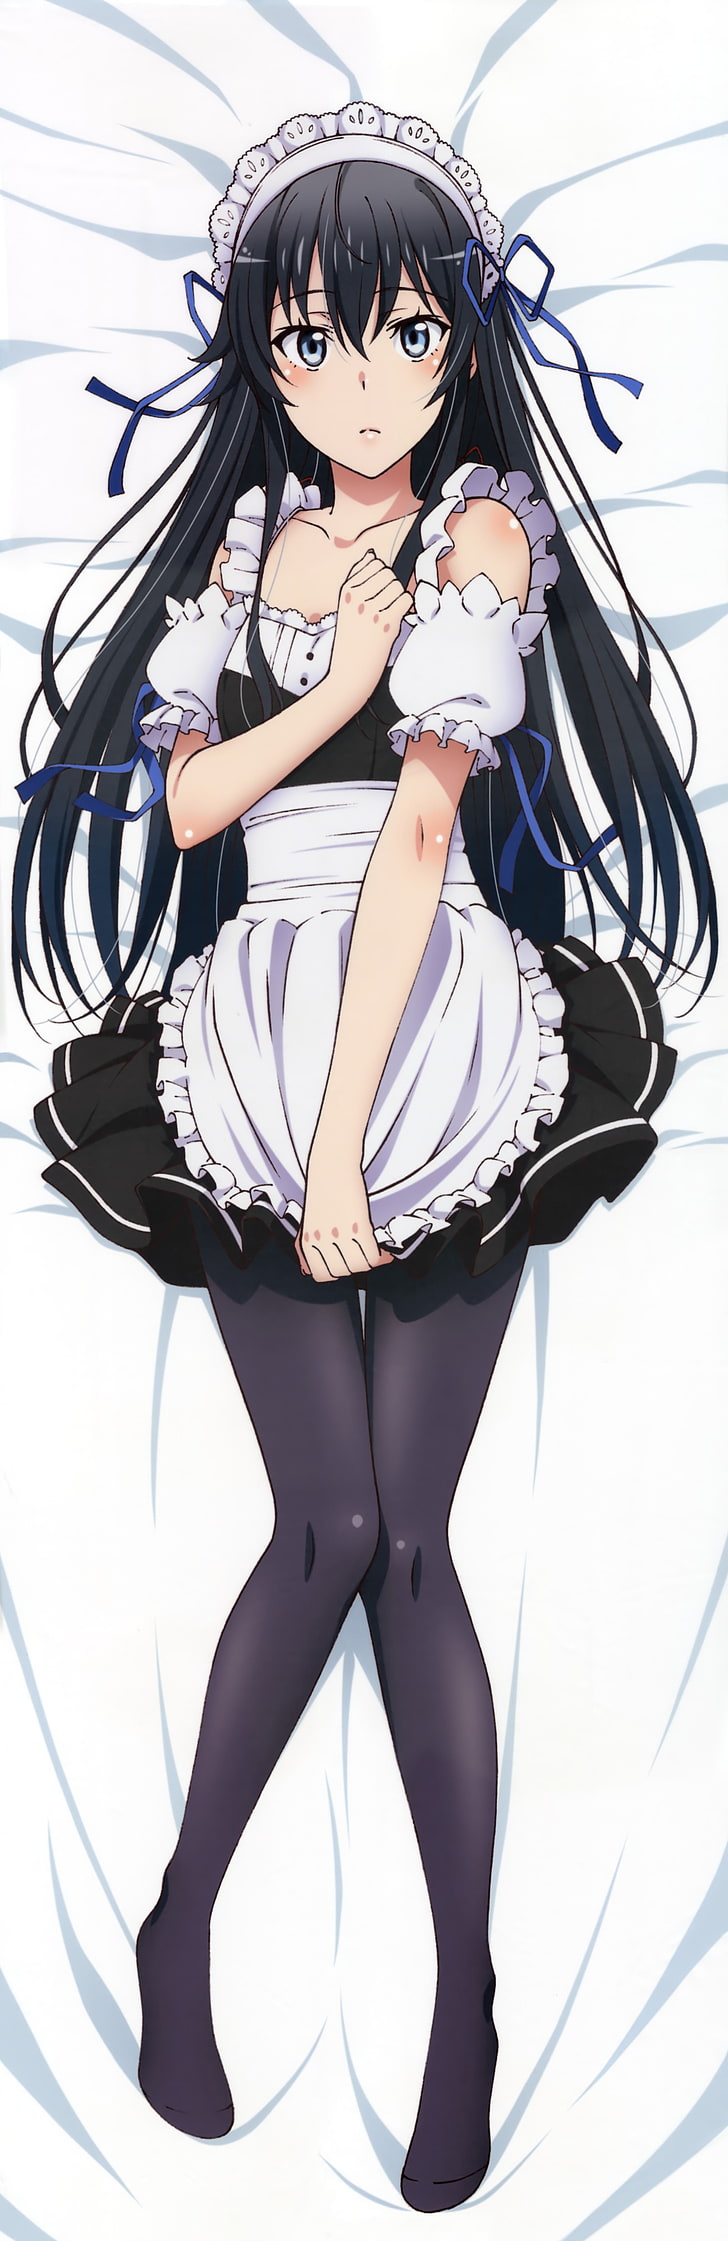 Yahari Ore no Seishun Love Comedy wa Machigatteiru, anime girls, Yukinoshita Yukino, anime, maid outfit, legs, HD wallpaper